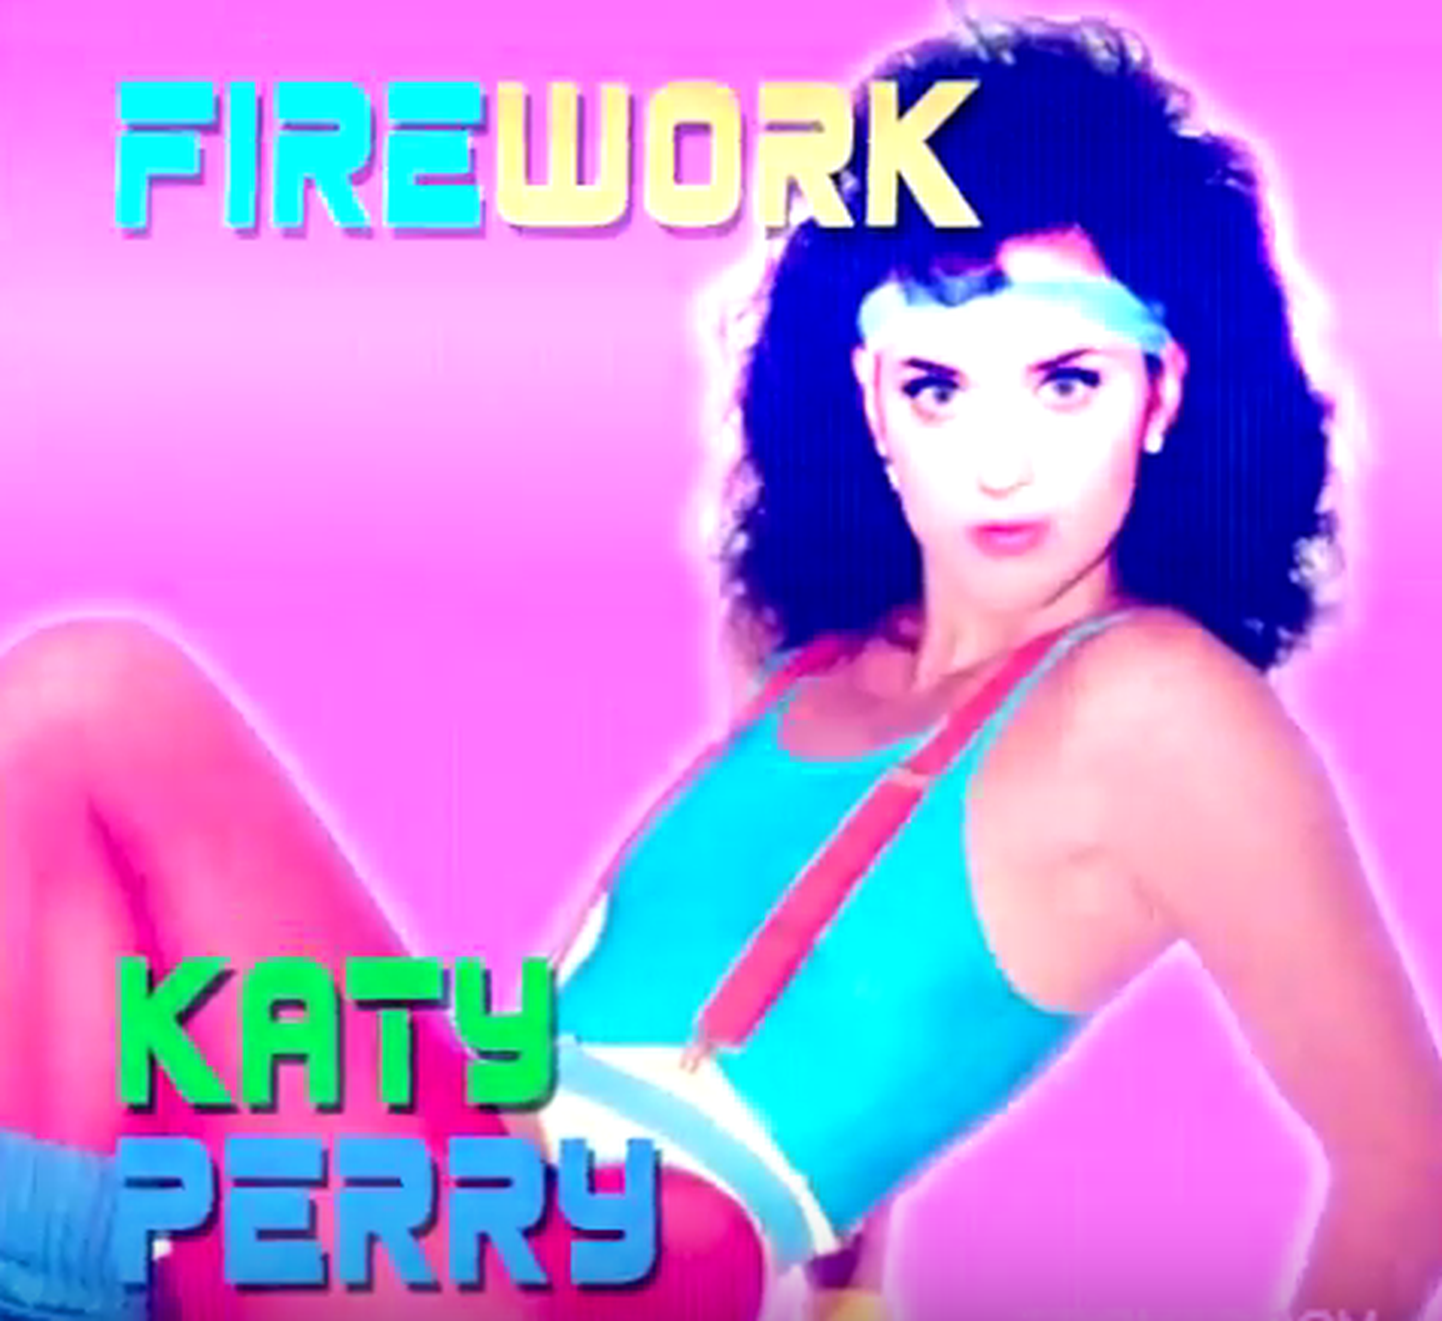 Katy Parry loo «Firework» 80ndate remix